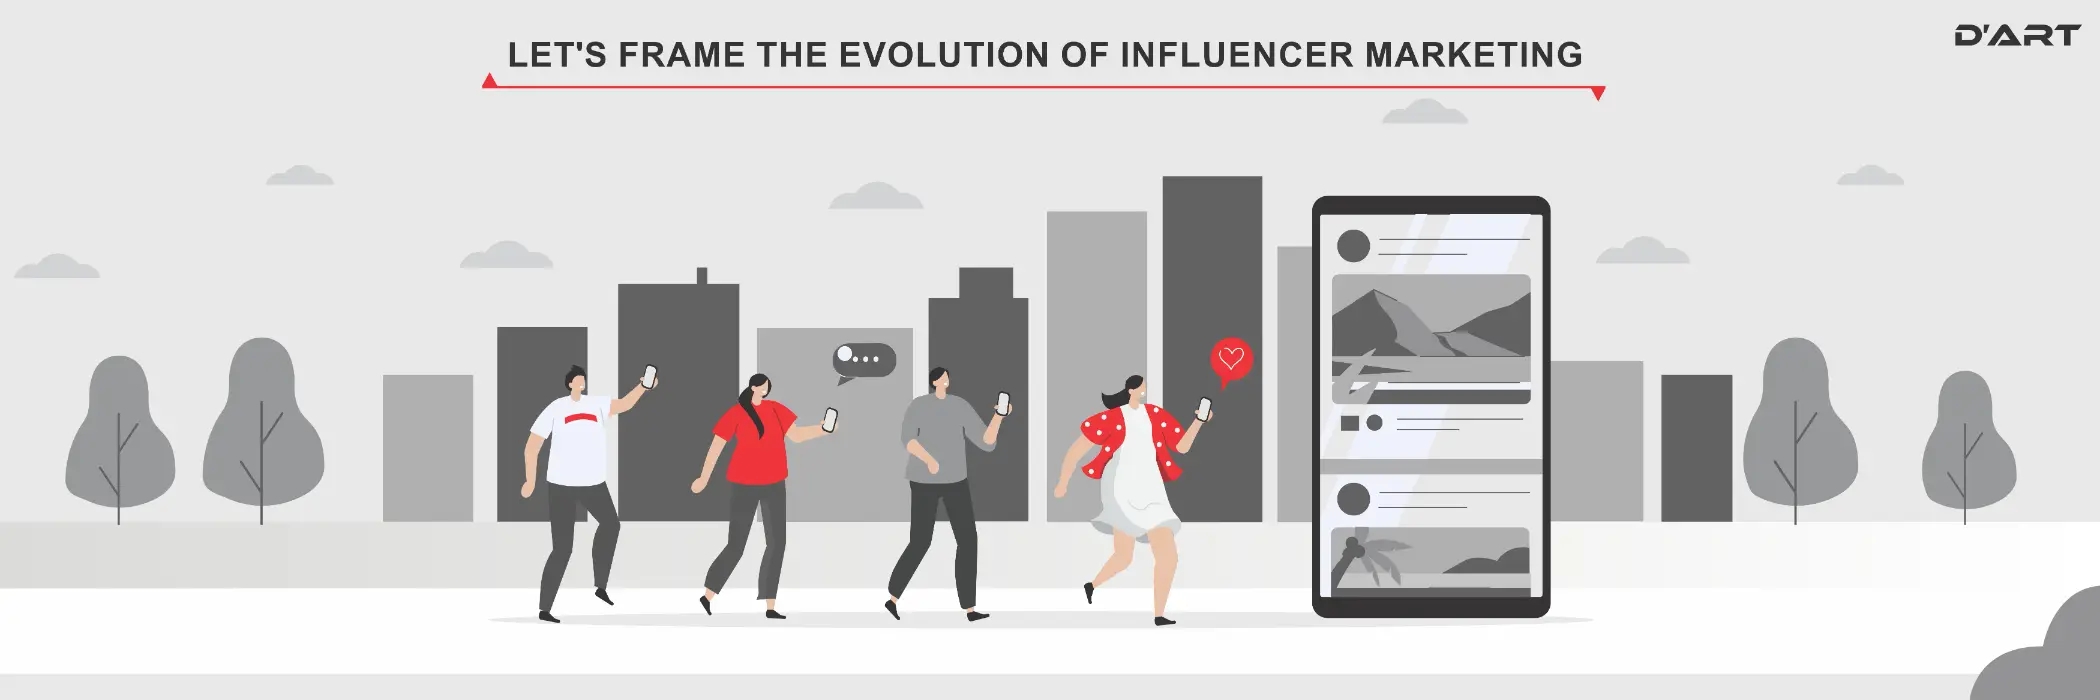 Let's frame the evolution of influencer marketing